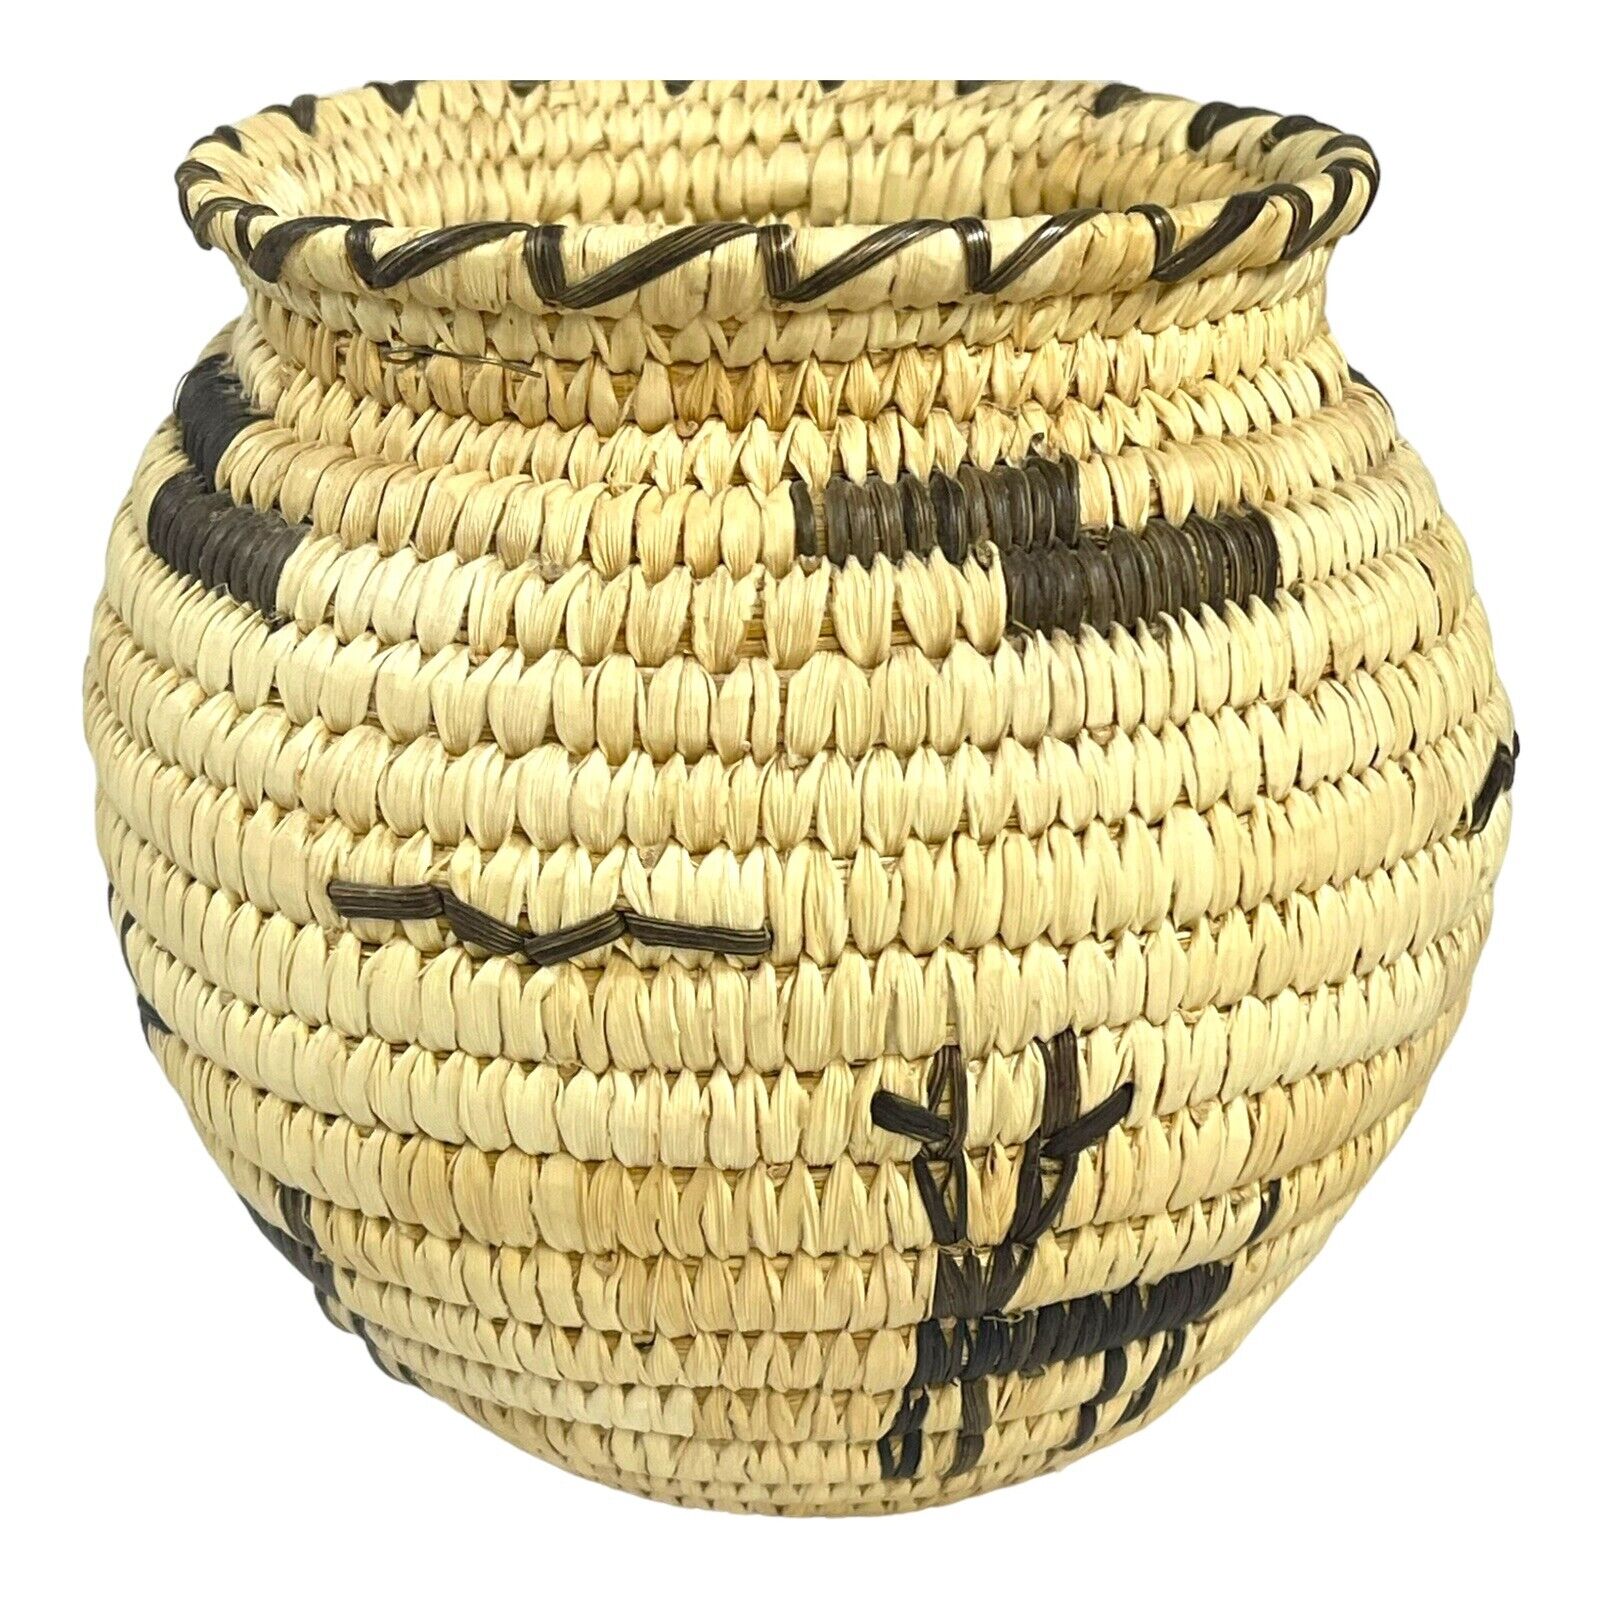 Papago Basket Figural Deer Basket Southwest Native American Woven 6” Vintage